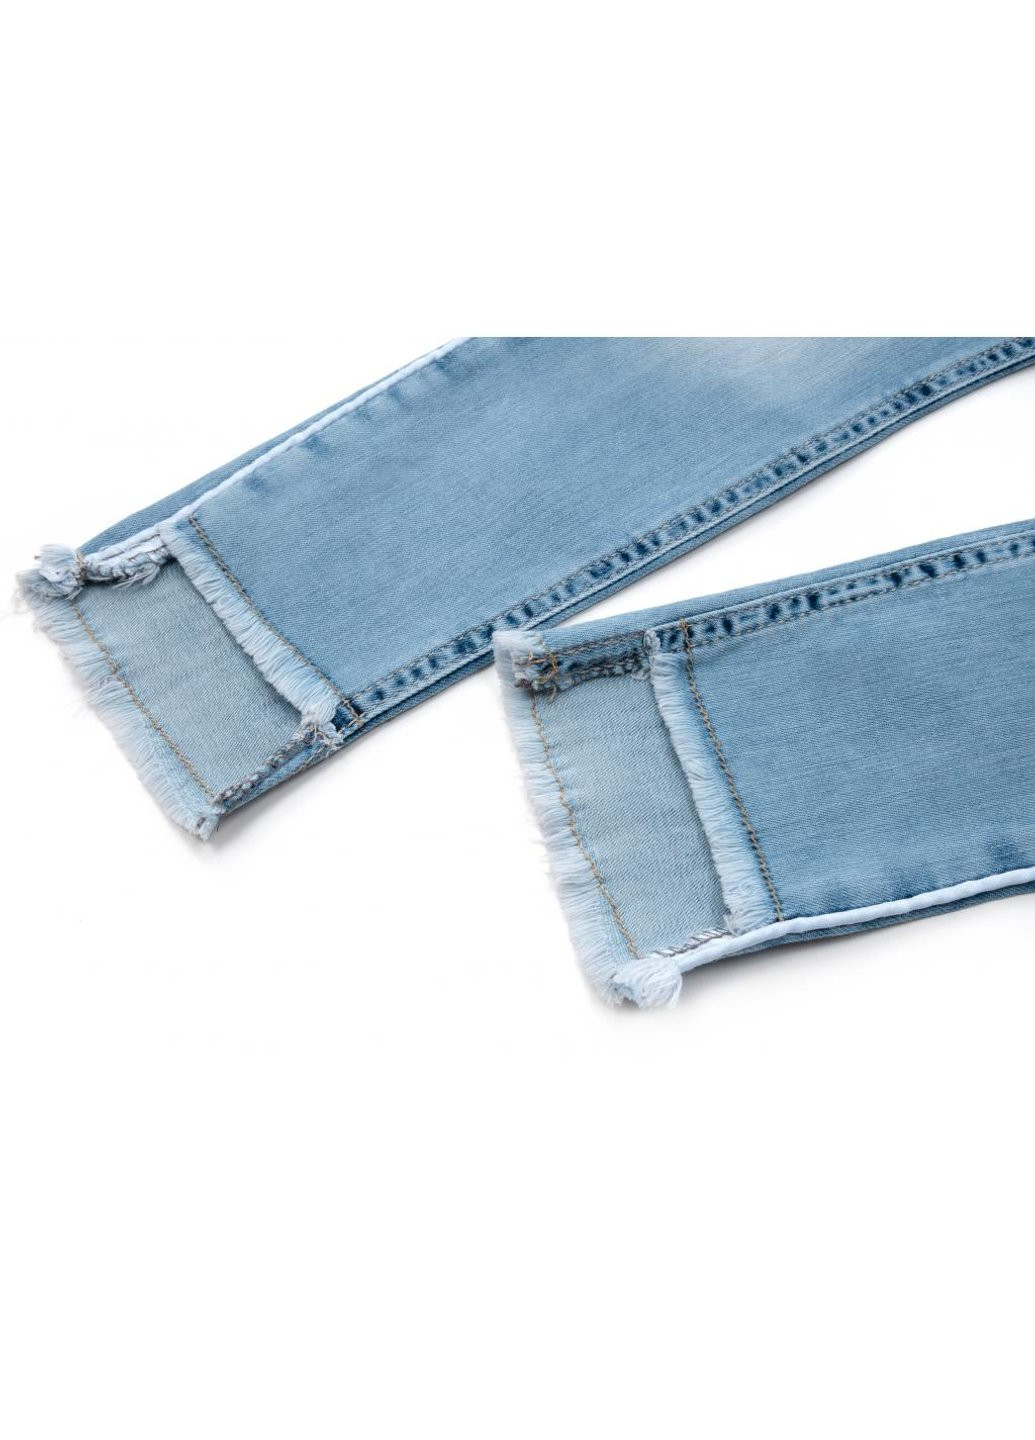 Голубые демисезонные джинсы зауженые (esc-1981-110g-blue) Breeze